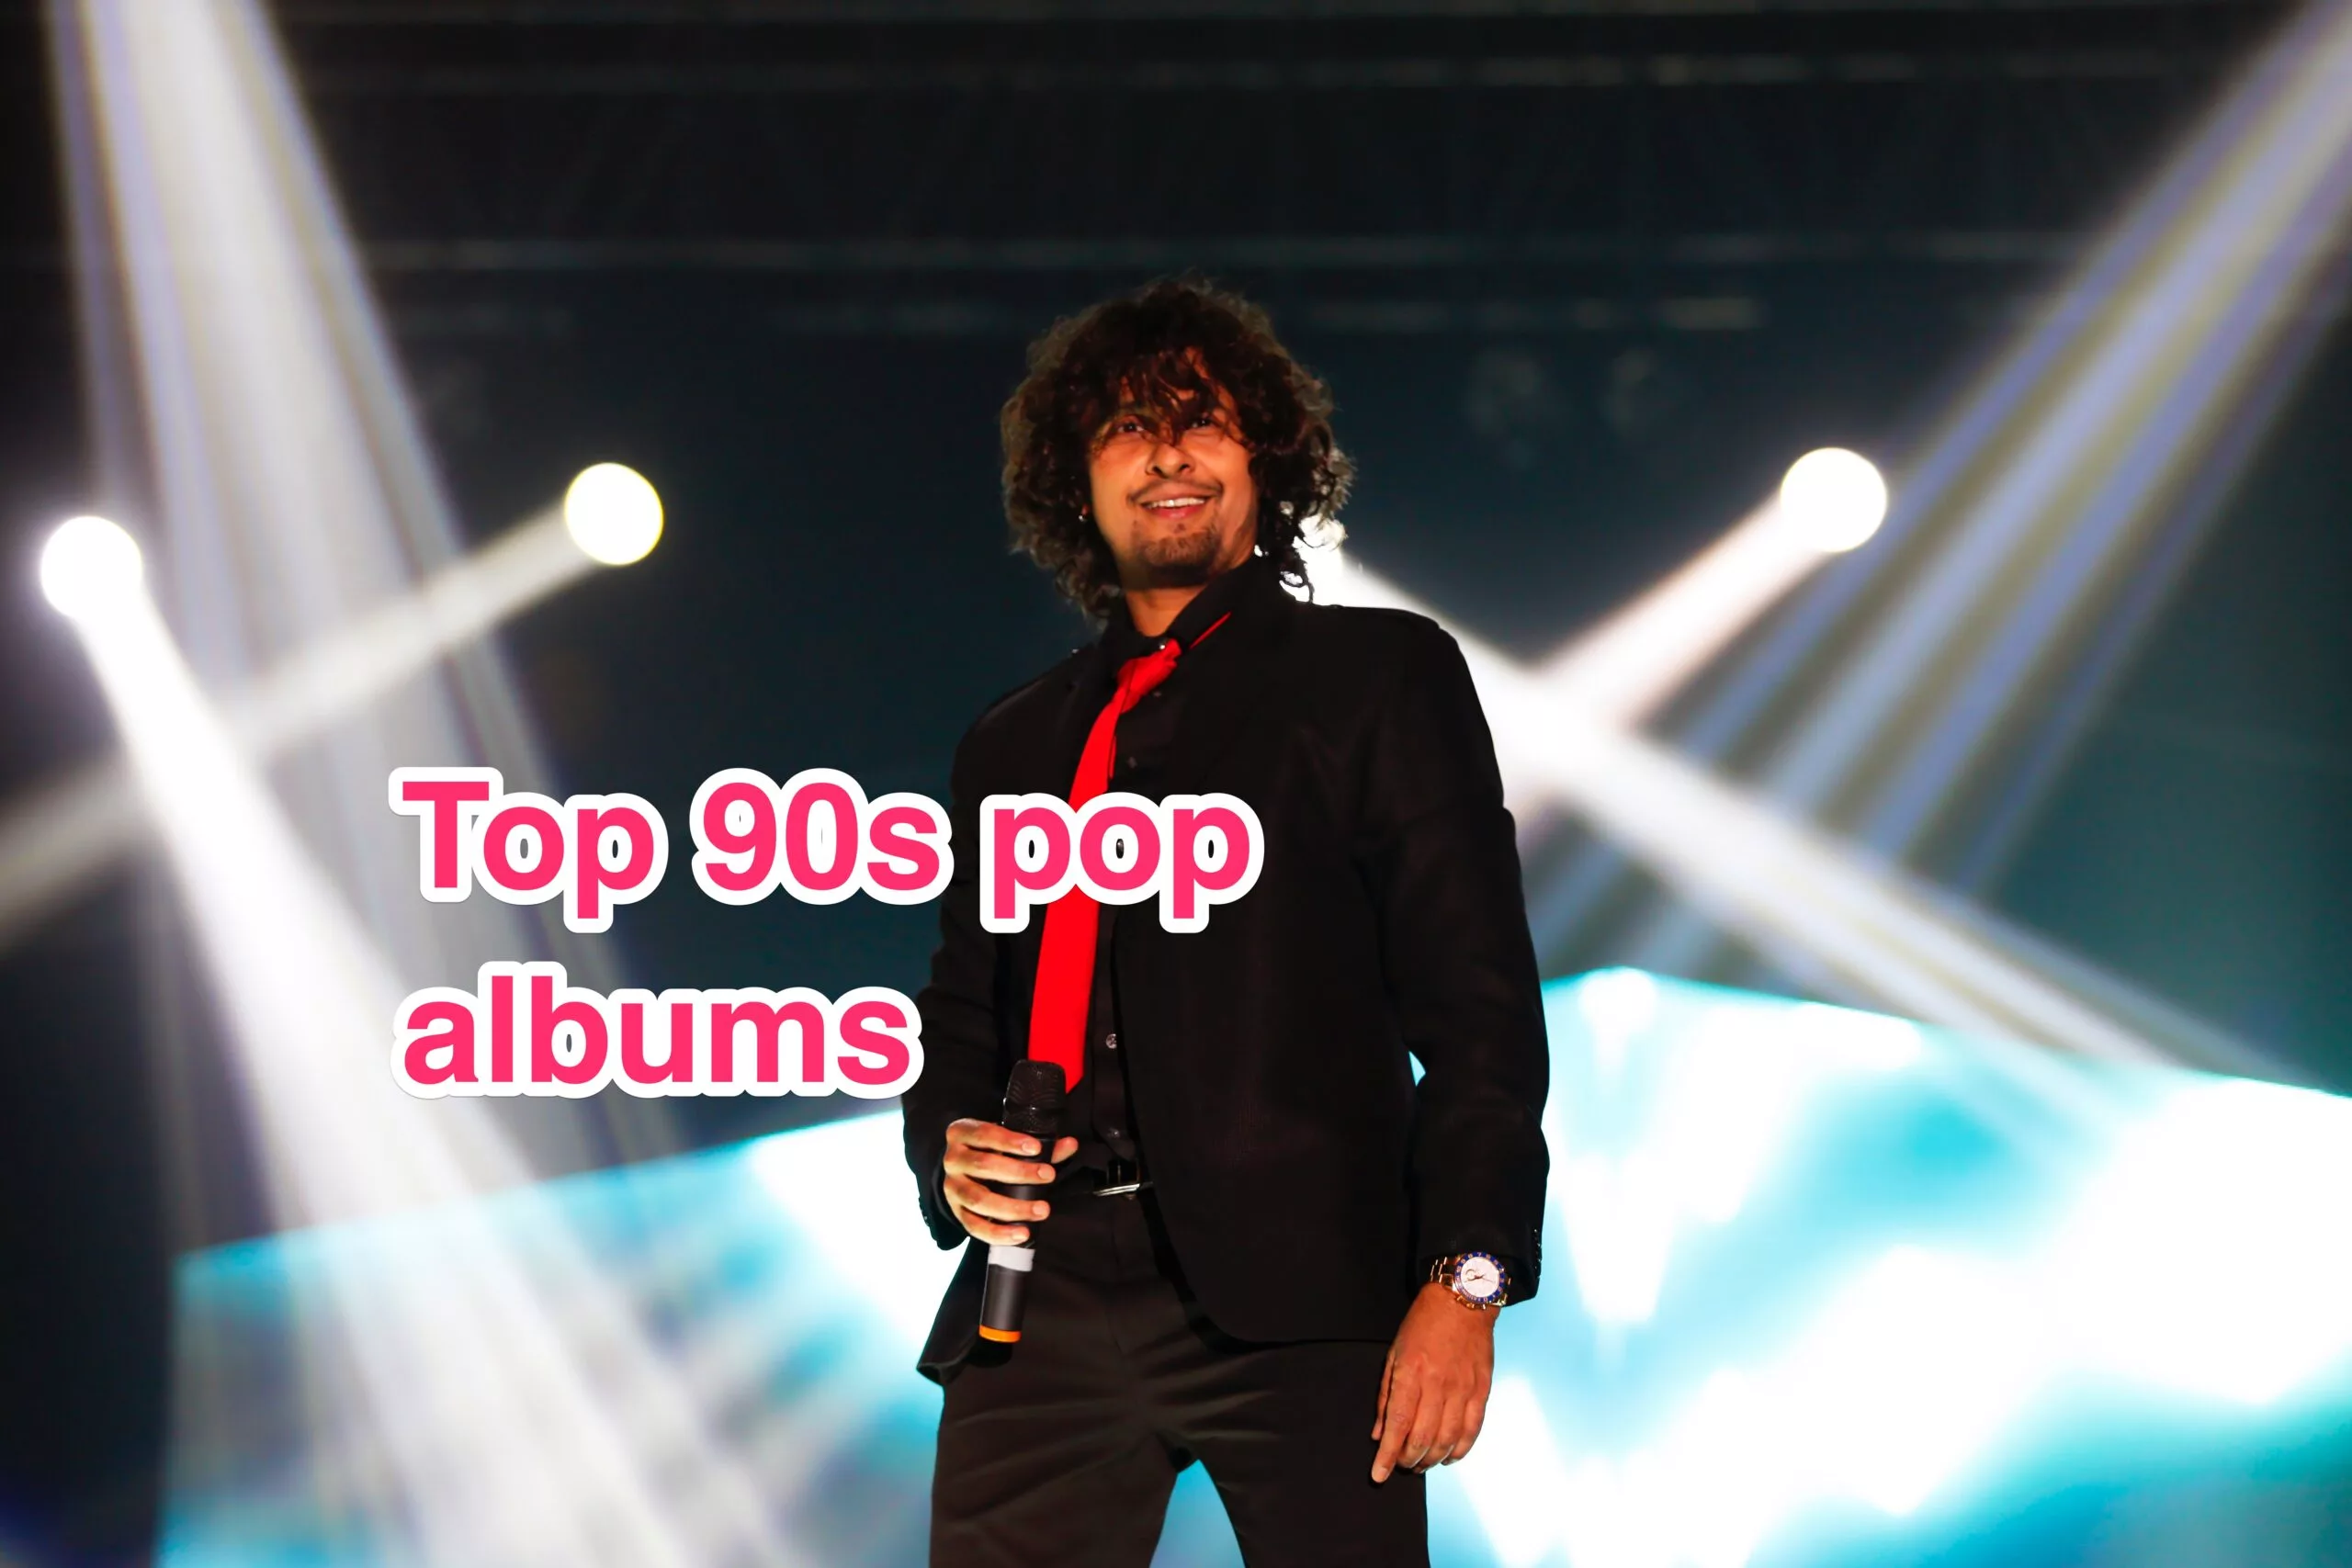 Sonu Nigam's 90's pop album